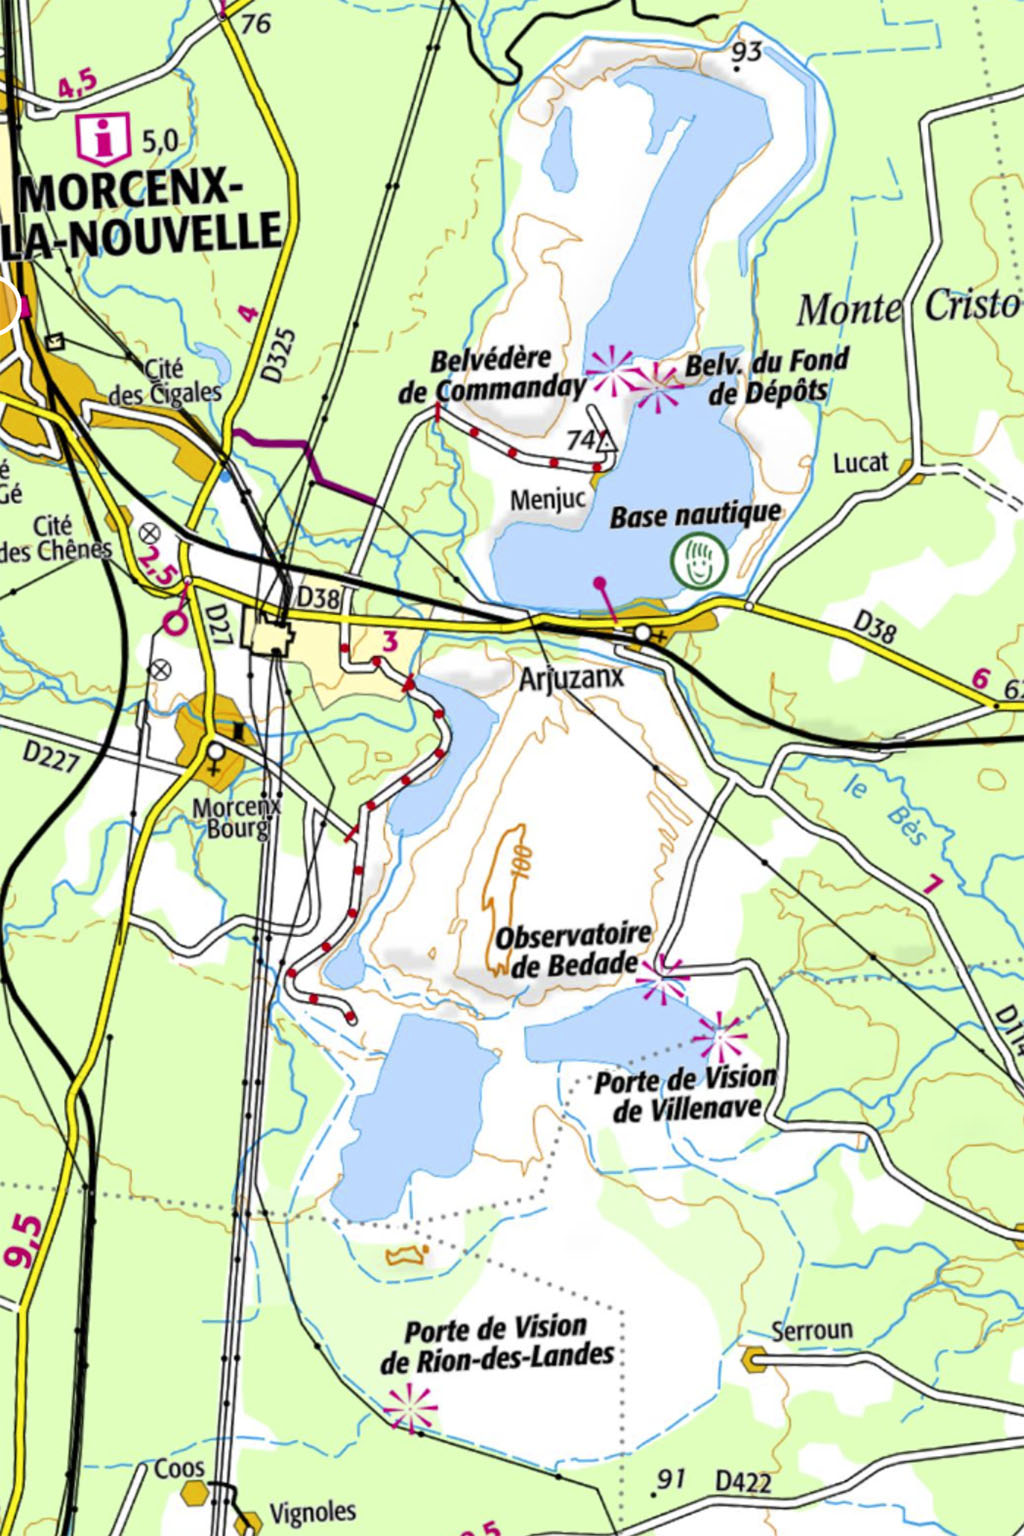 Copie d'écran de la carte de la région de Morcenx